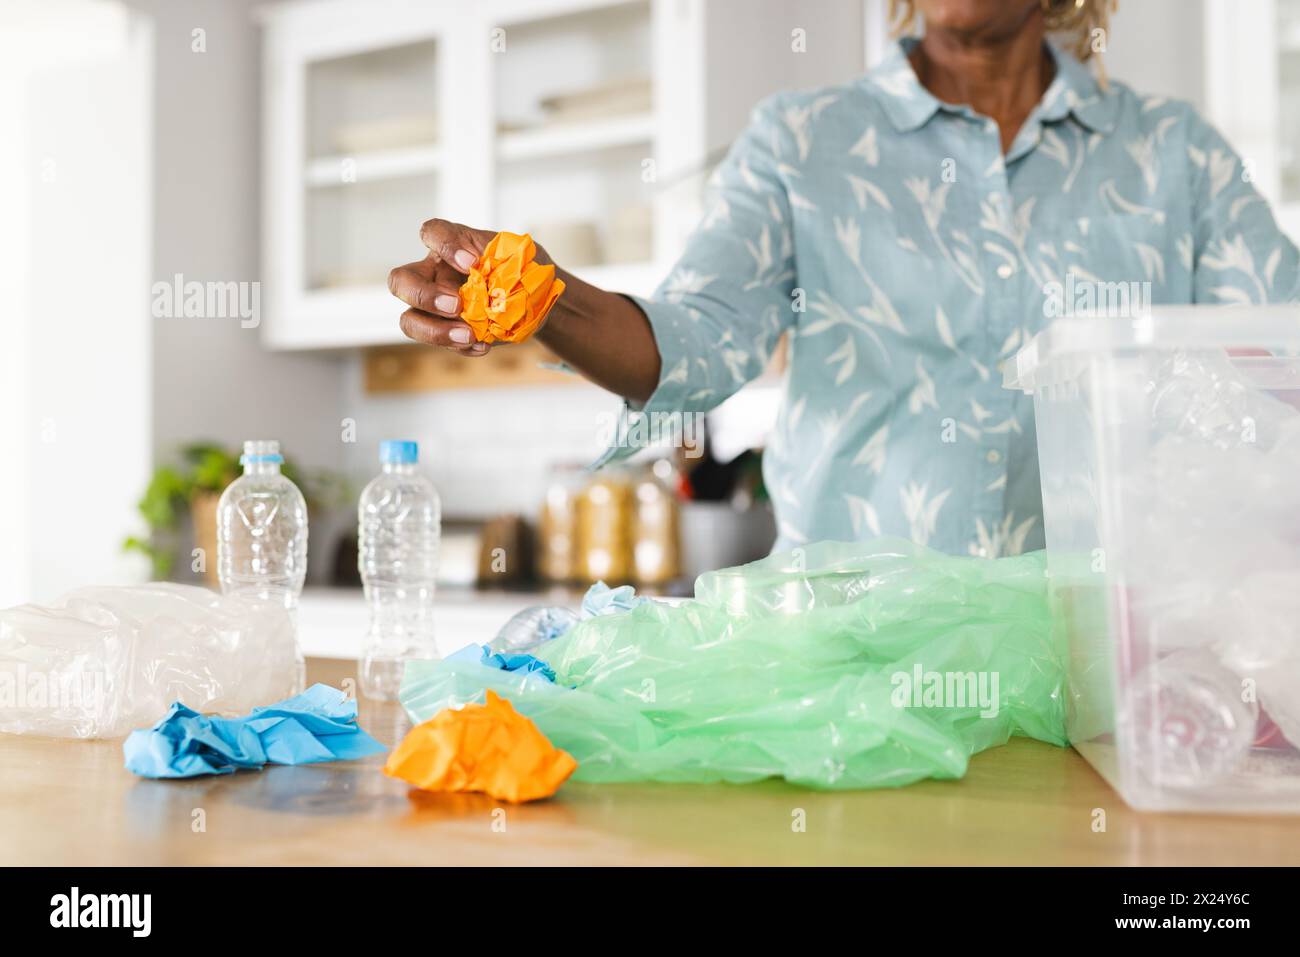 Une femme afro-américaine sénior triant des déchets plastiques pour les recycler à la maison. Elle a les cheveux courts gris et porte une chemise à motifs clairs, inaltérée. Banque D'Images